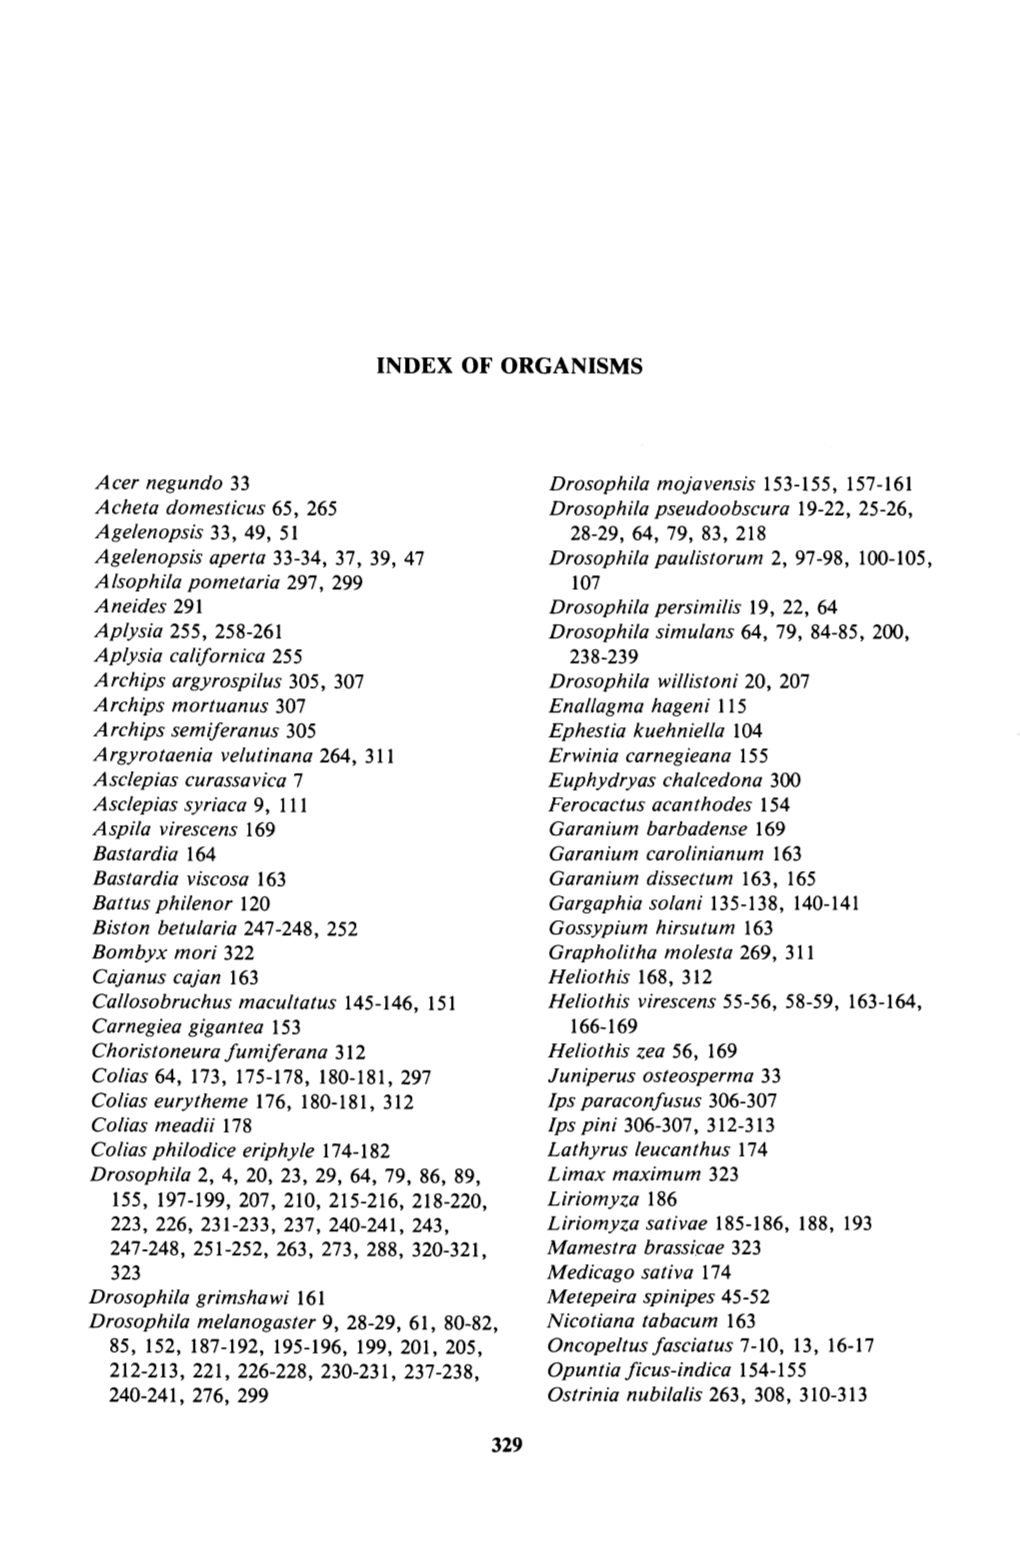 Index of Organisms